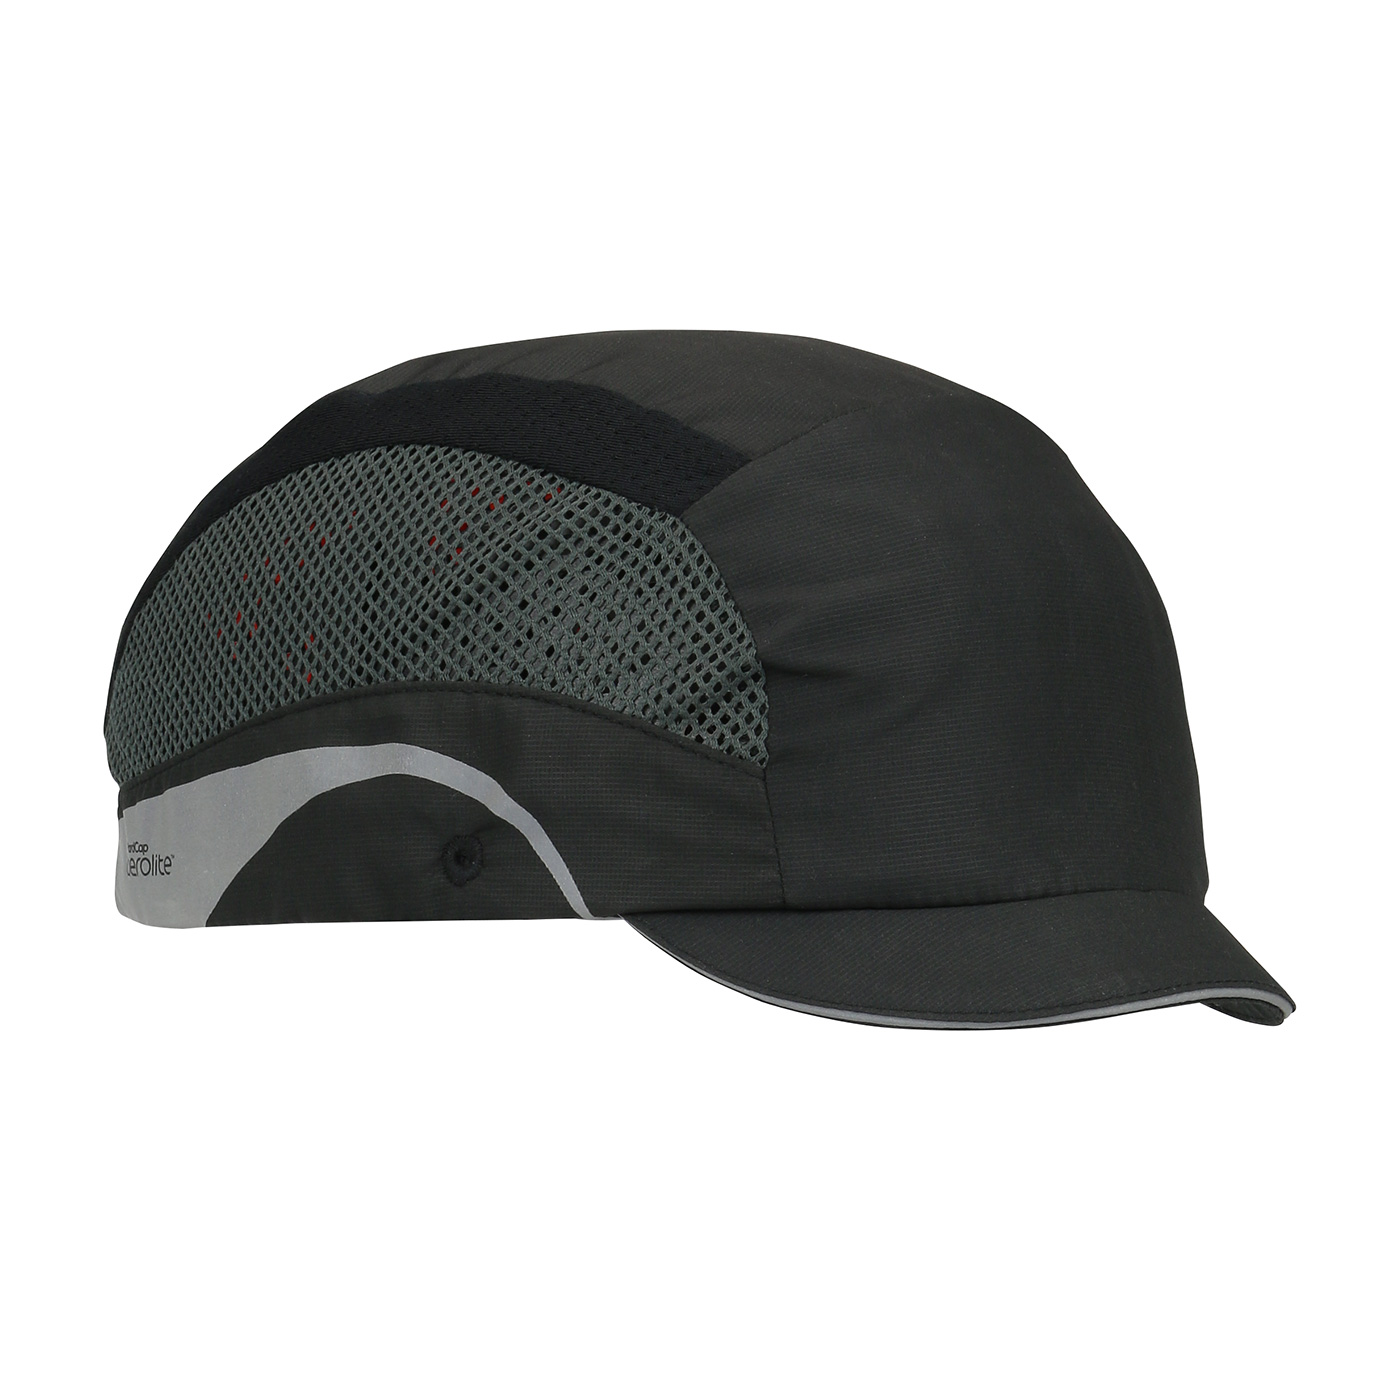 282-AEM130 PIP®轻质AeroLite™1 '微边缘棒球风格凹凸帽:黑色/黑色